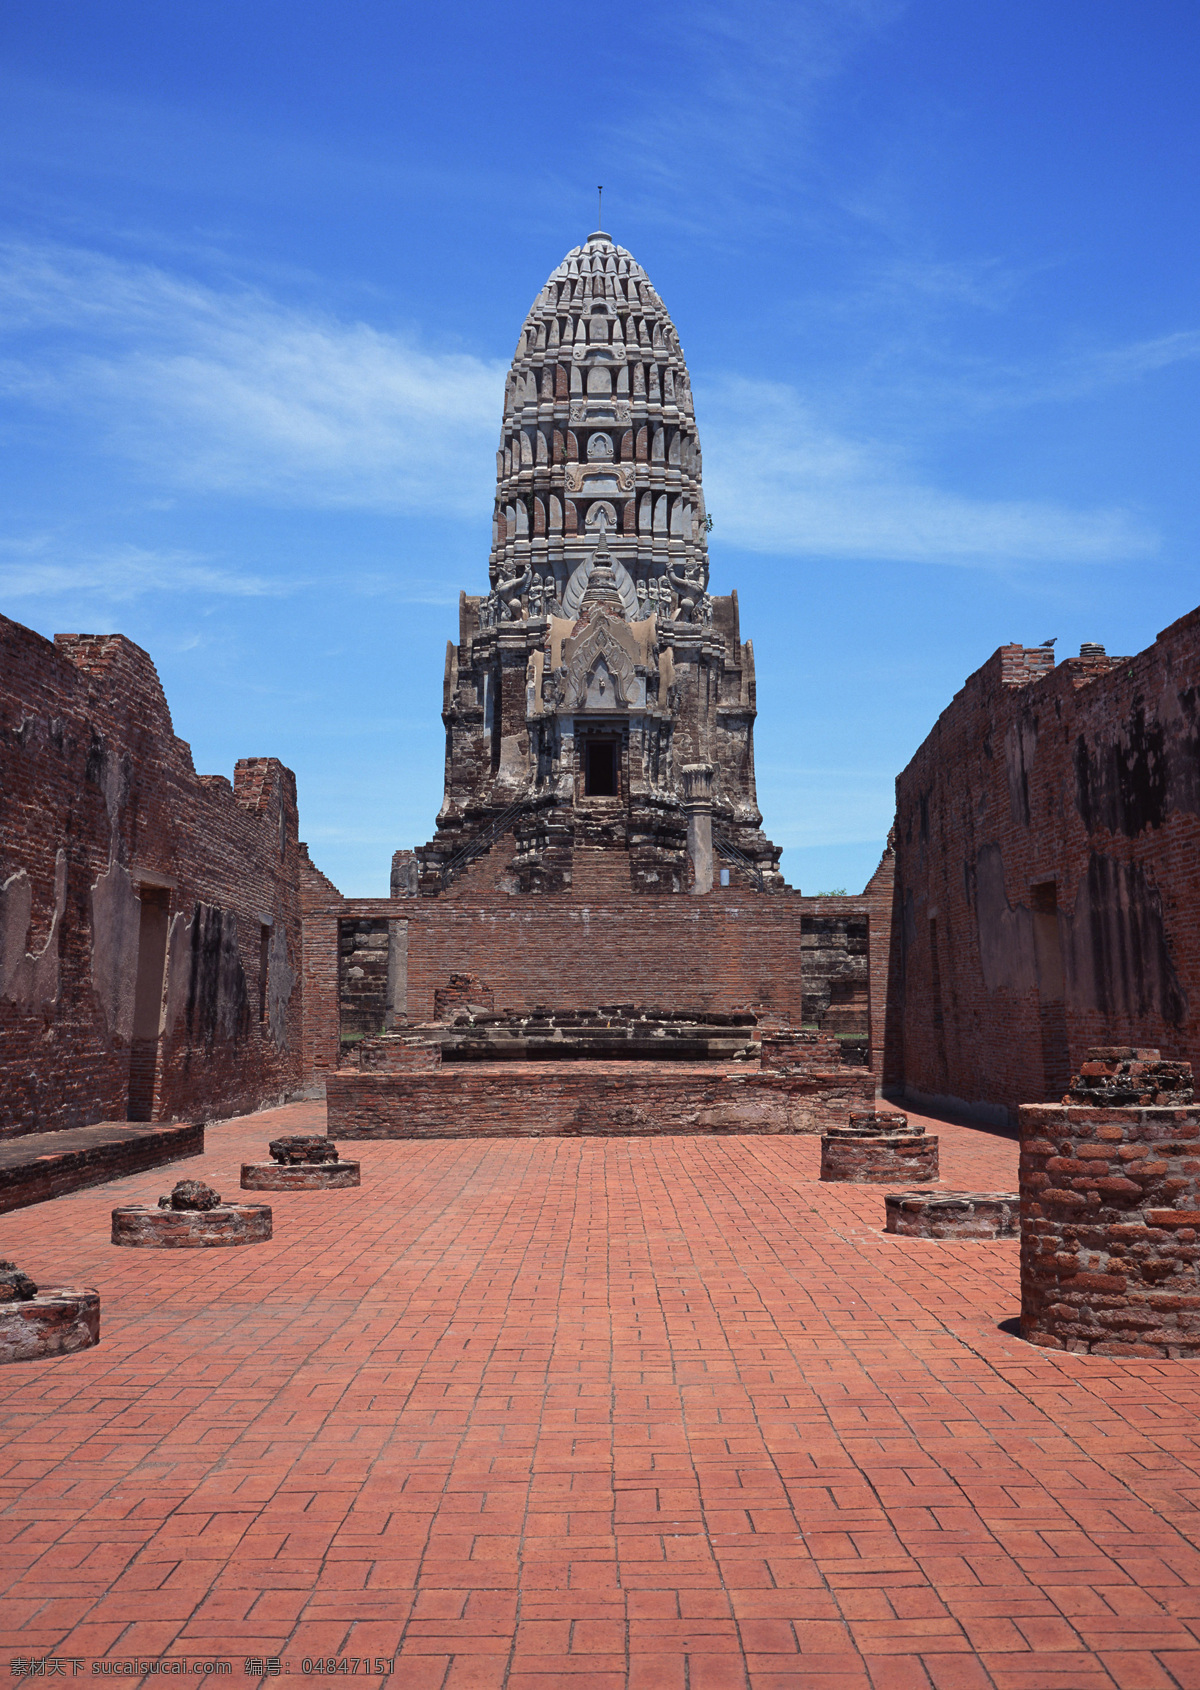 老挝14 老挝 石雕 奇景 蓝天 白云 旅游 风景 国内旅游 旅游摄影